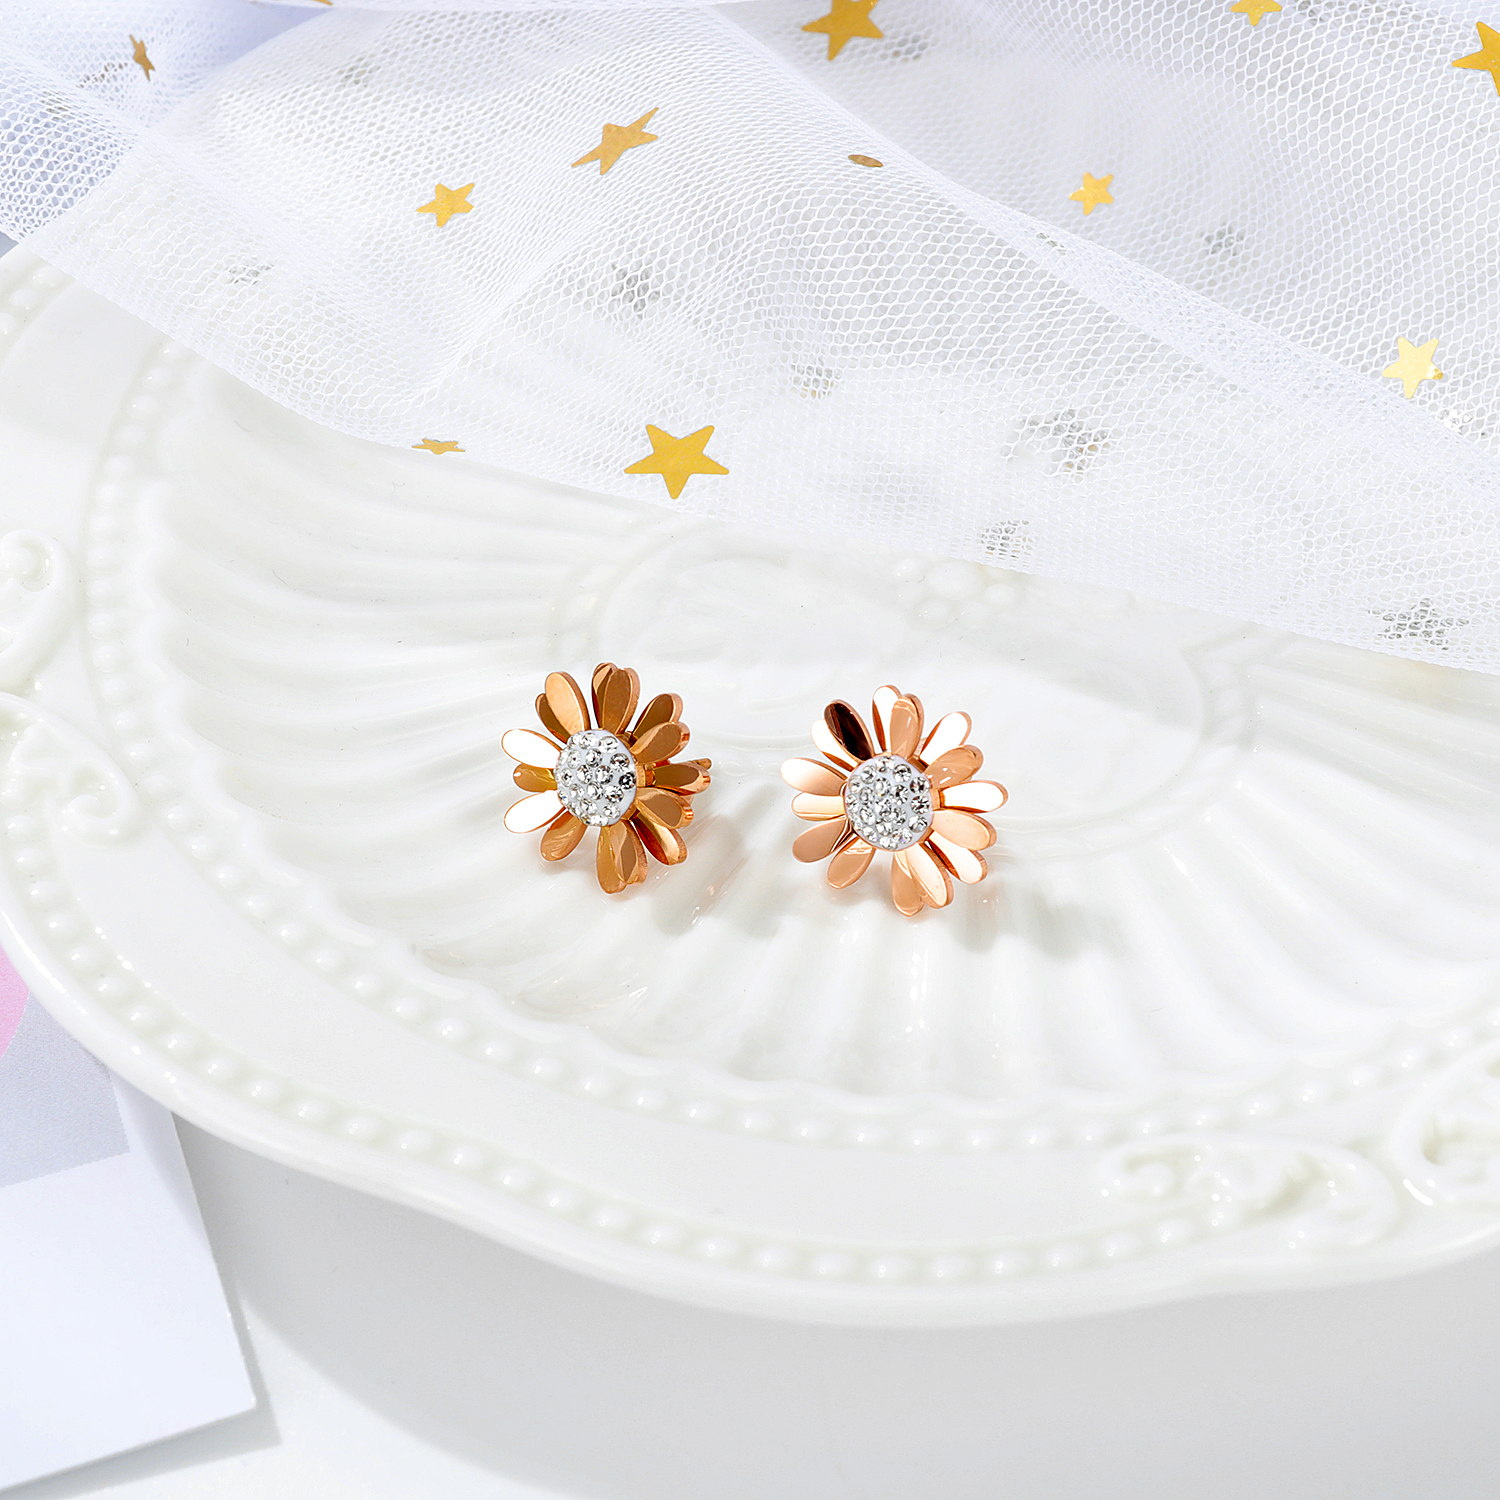 Artificial Flower Jewellery Earrings